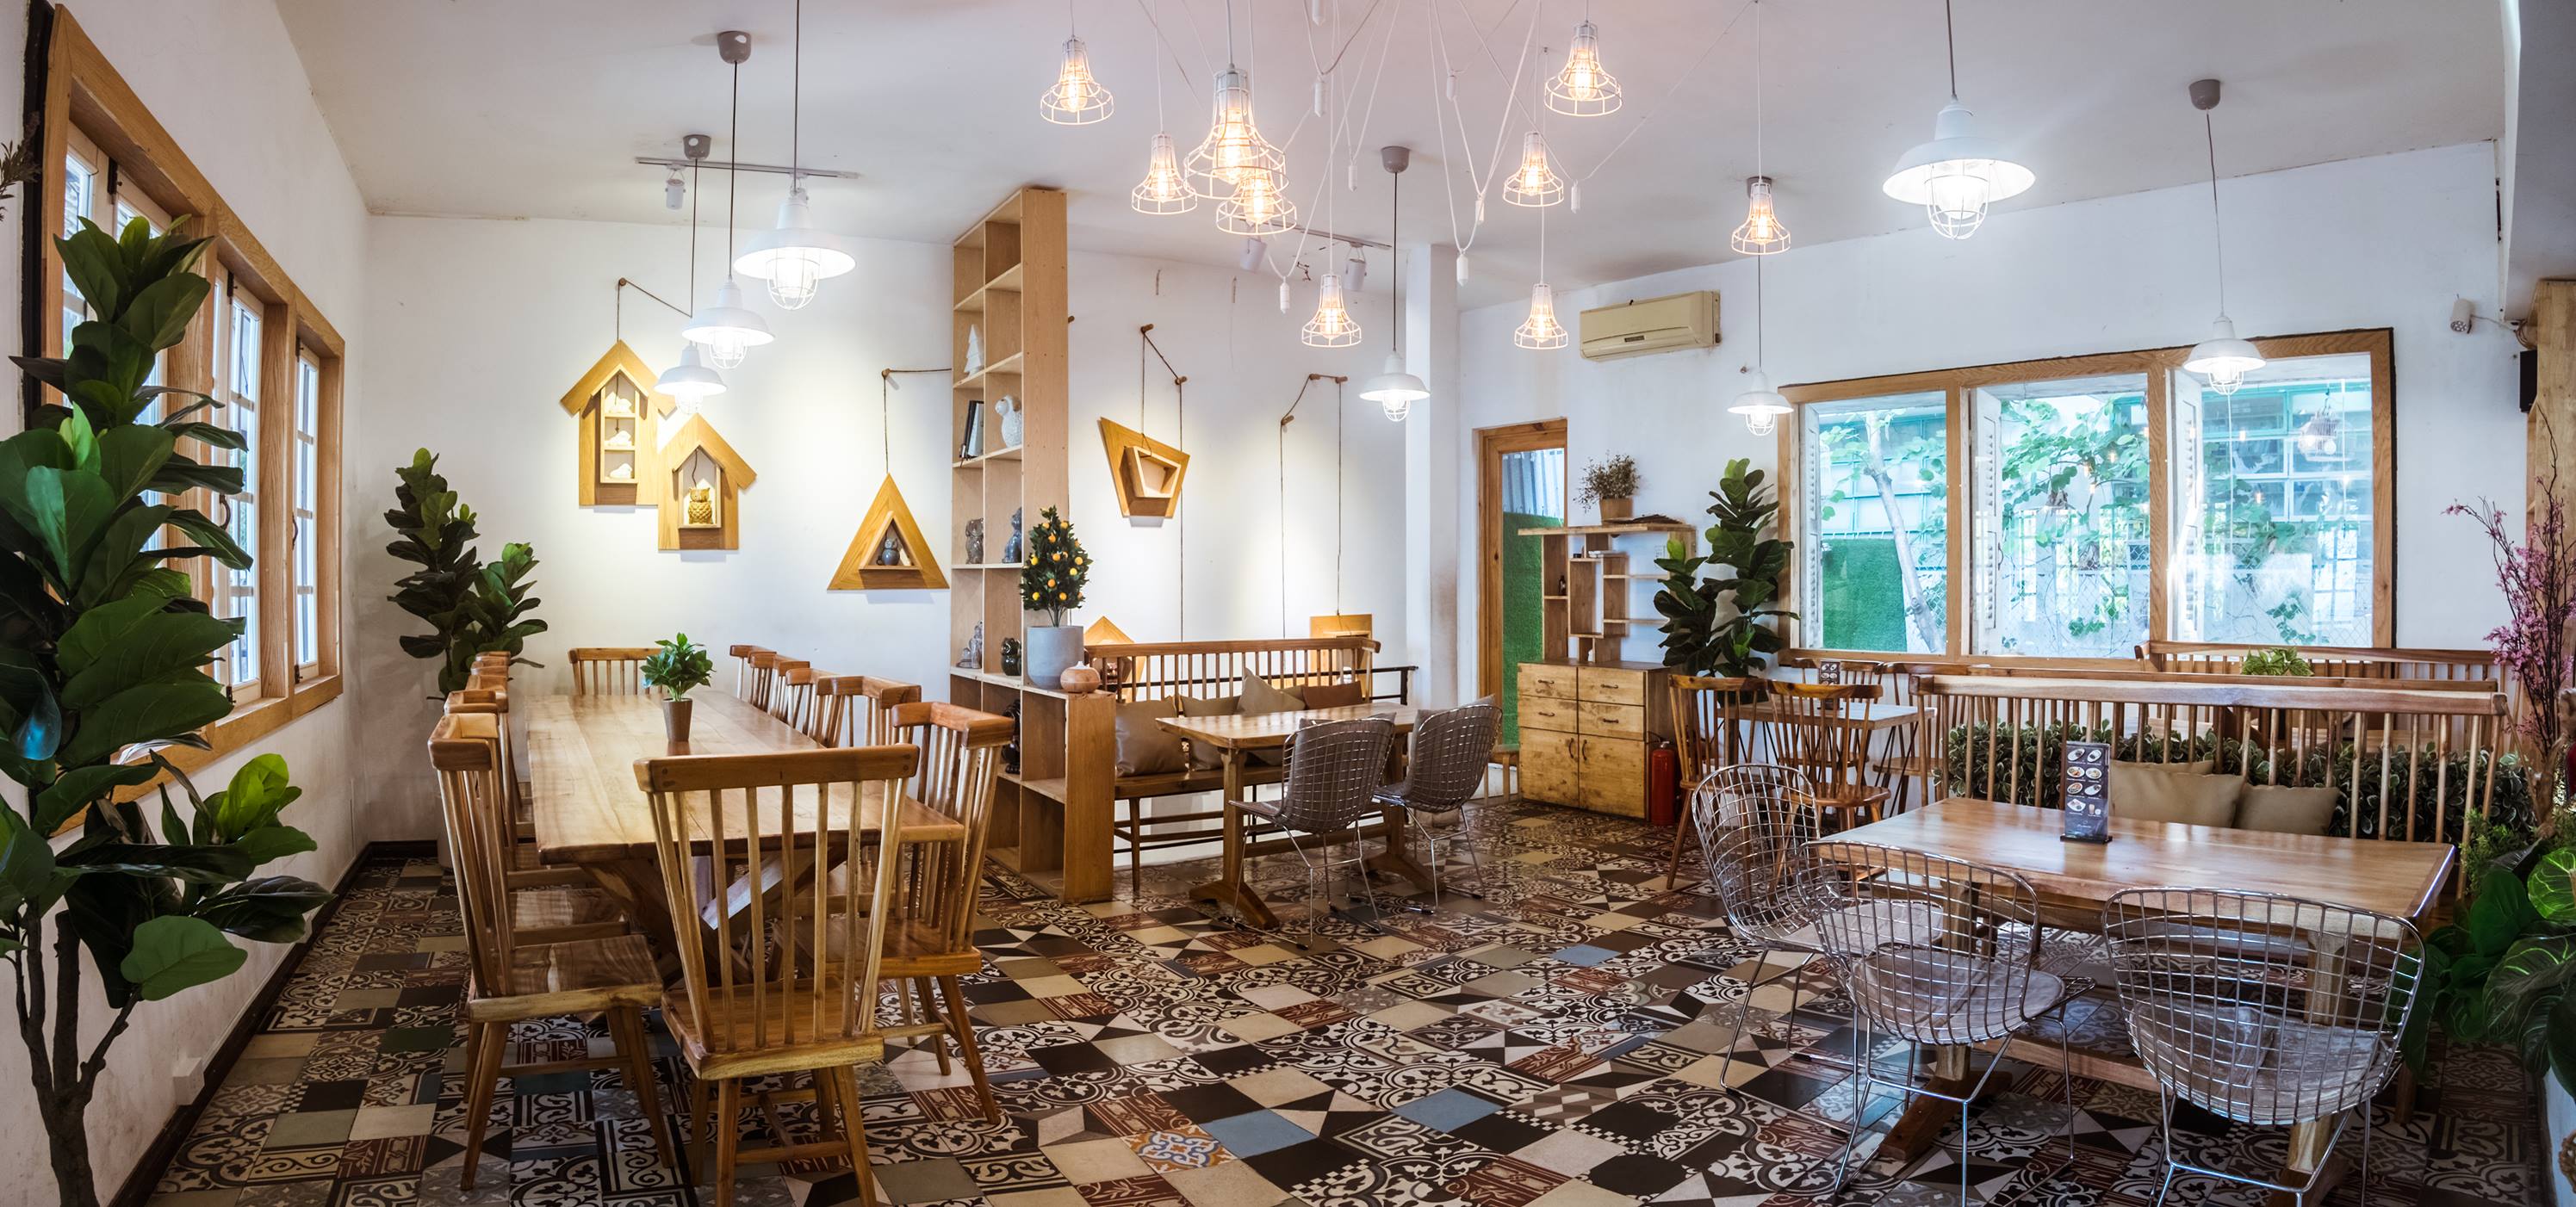 quán cà phê đẹp nhất Sài Gòn